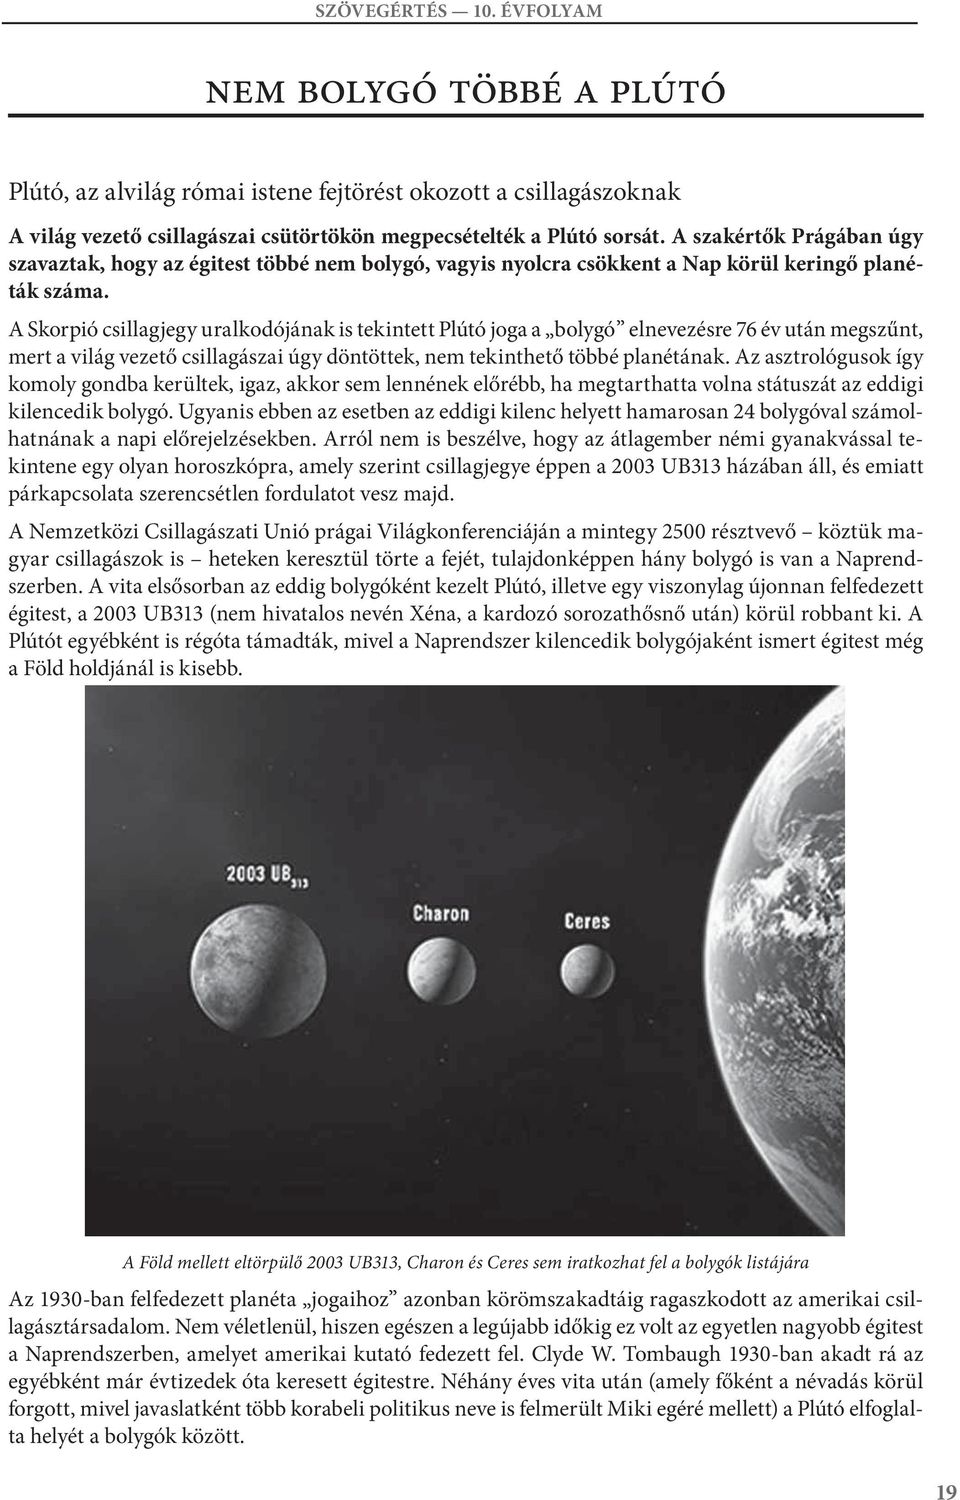 Skorpió csillagjegy uralkodójának is tekintett Plútó joga a bolygó elnevezésre 6 év után megszűnt, mert a világ vezető csillagászai úgy döntöttek, nem tekinthető többé planétának.